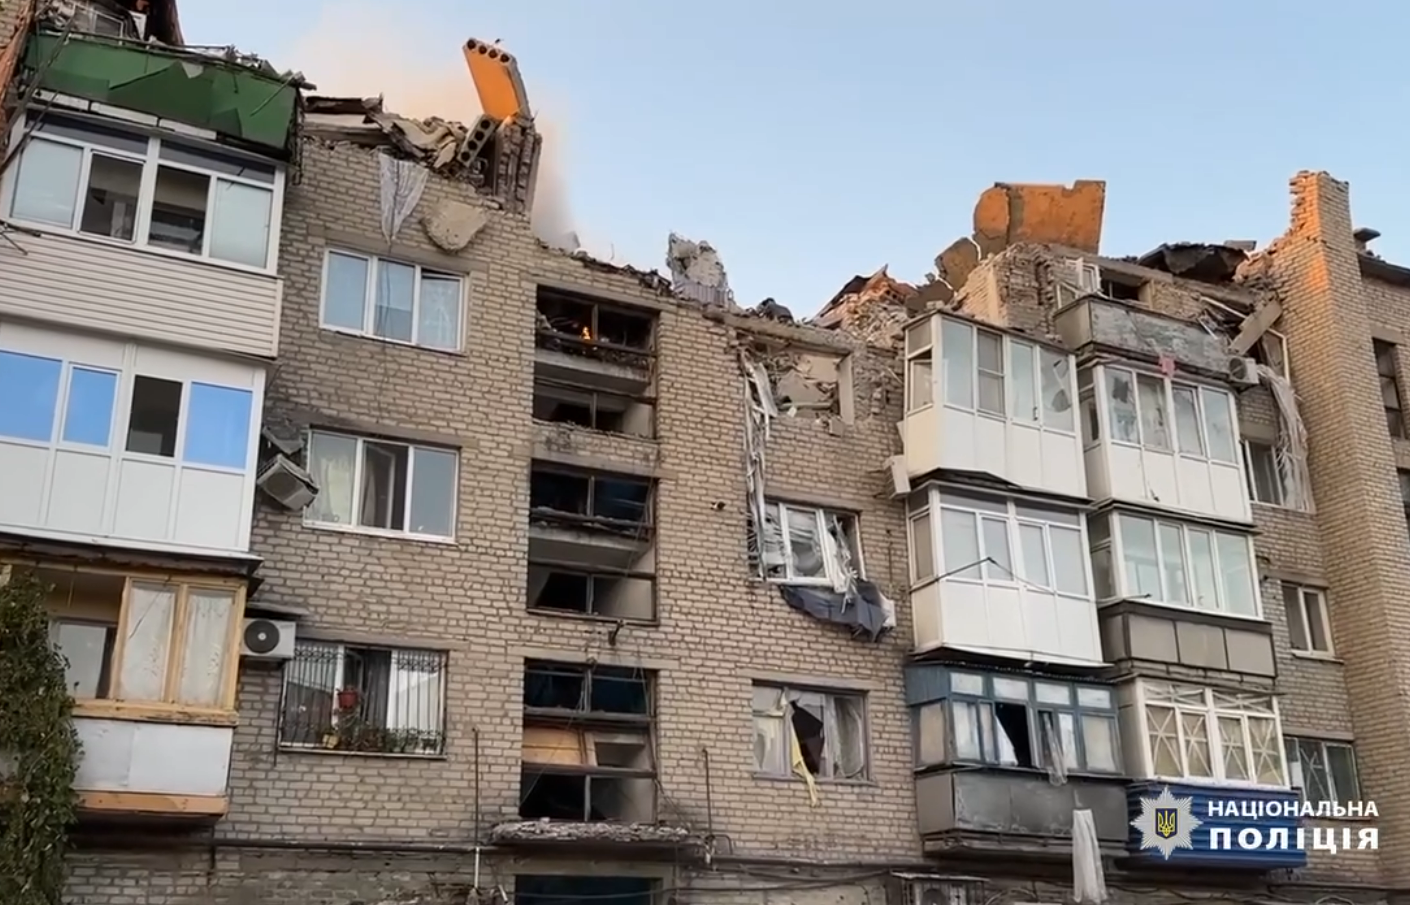 Людей вытаскивали из-под завалов: в полиции показали кадры первых минут спасательной операции в Покровске после удара РФ